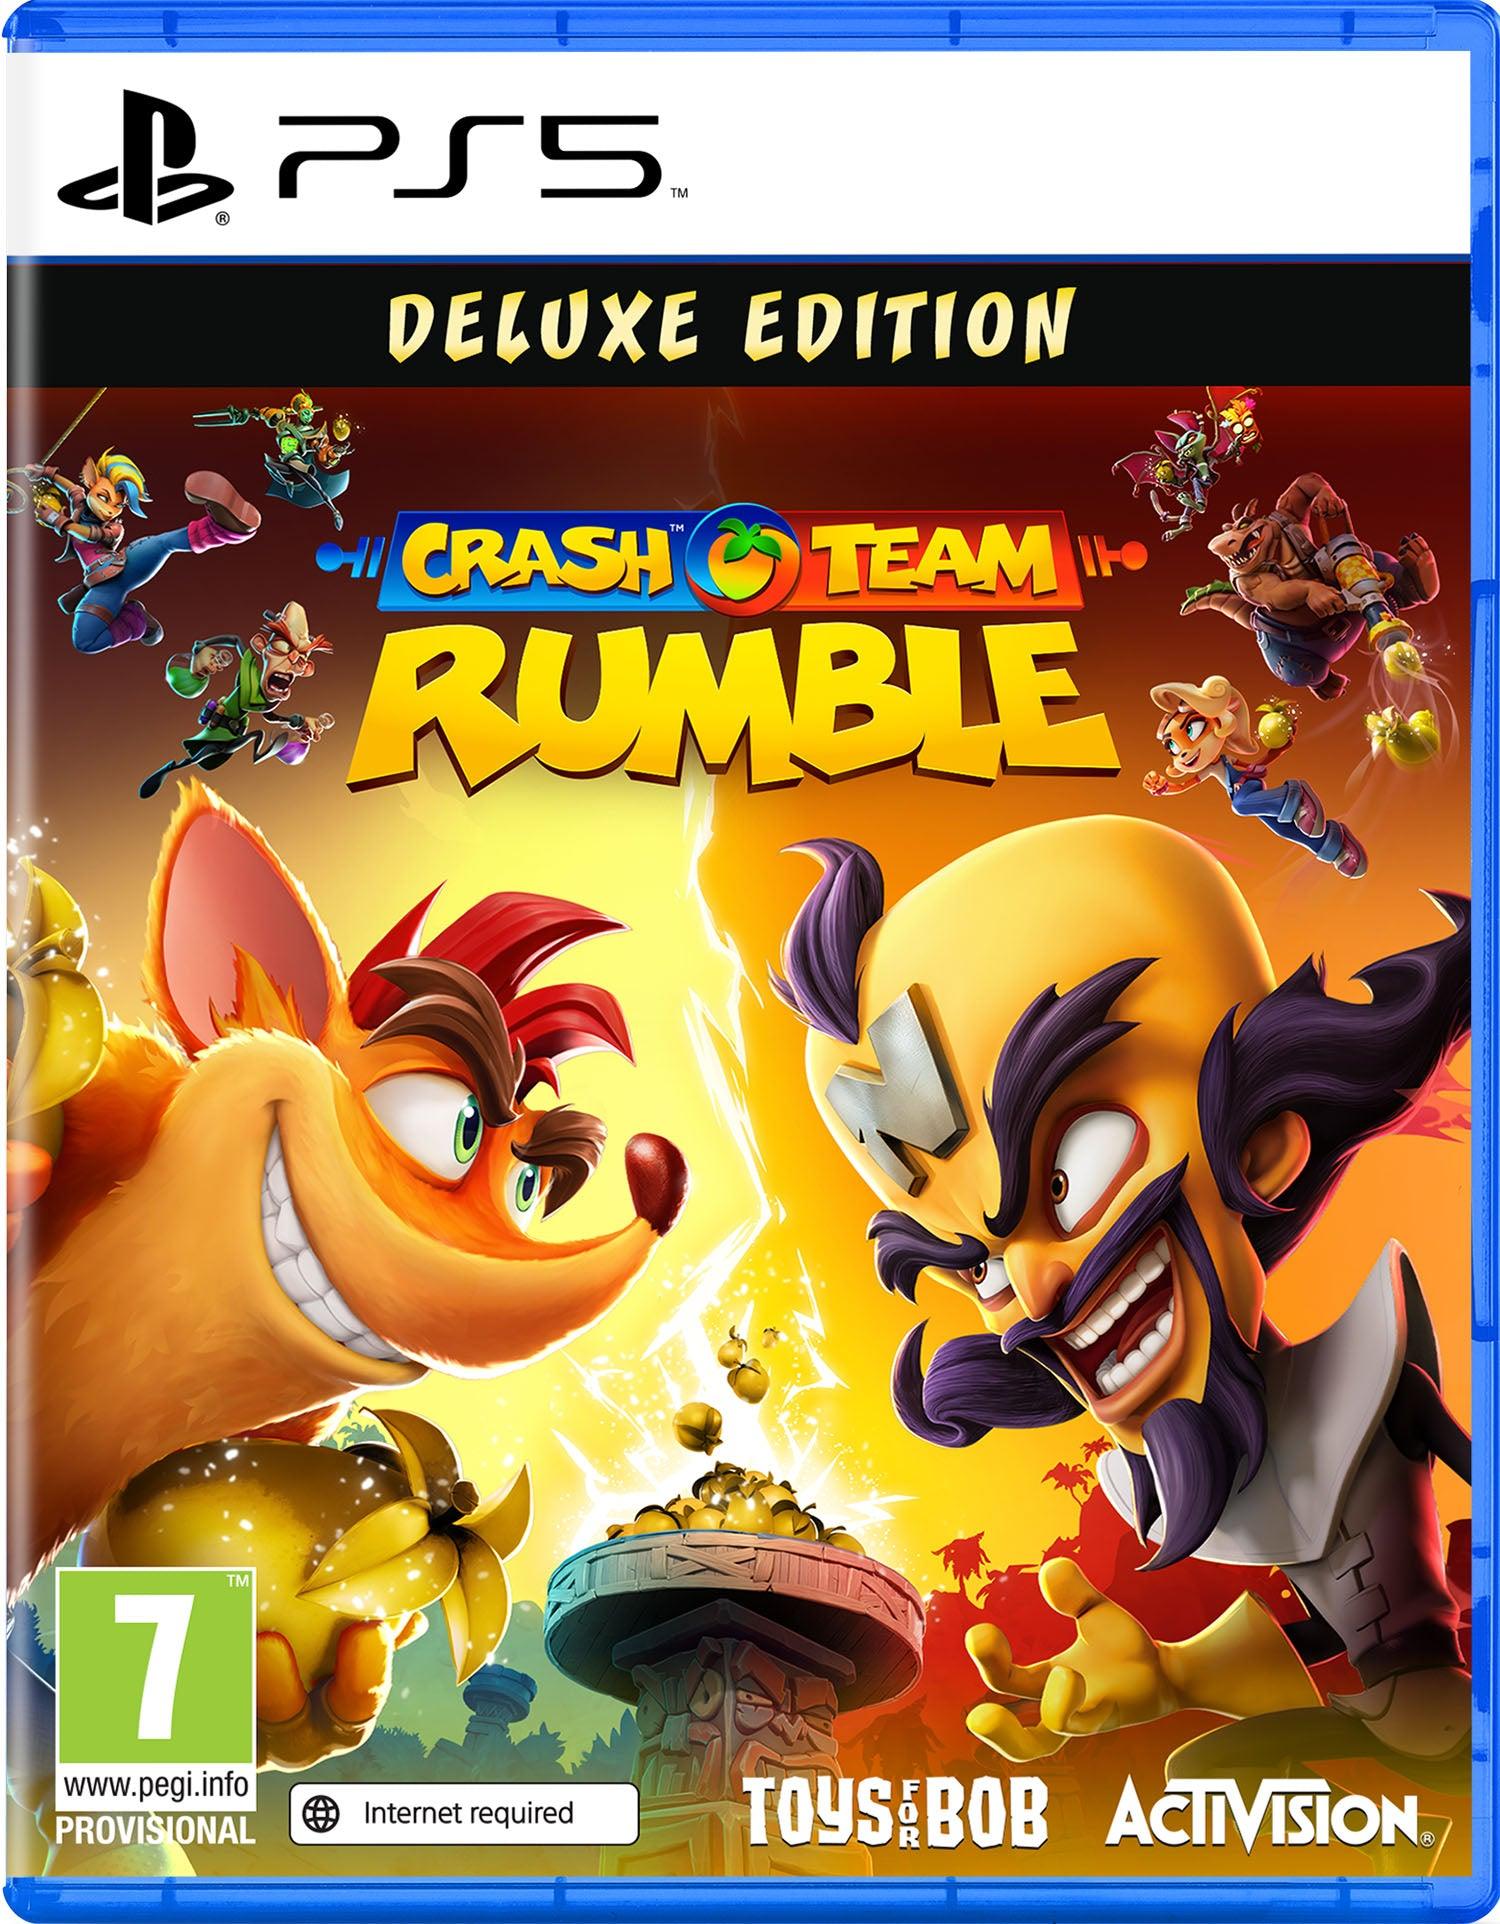 Crash Team Rumble Deluxe - Want a New Gadget